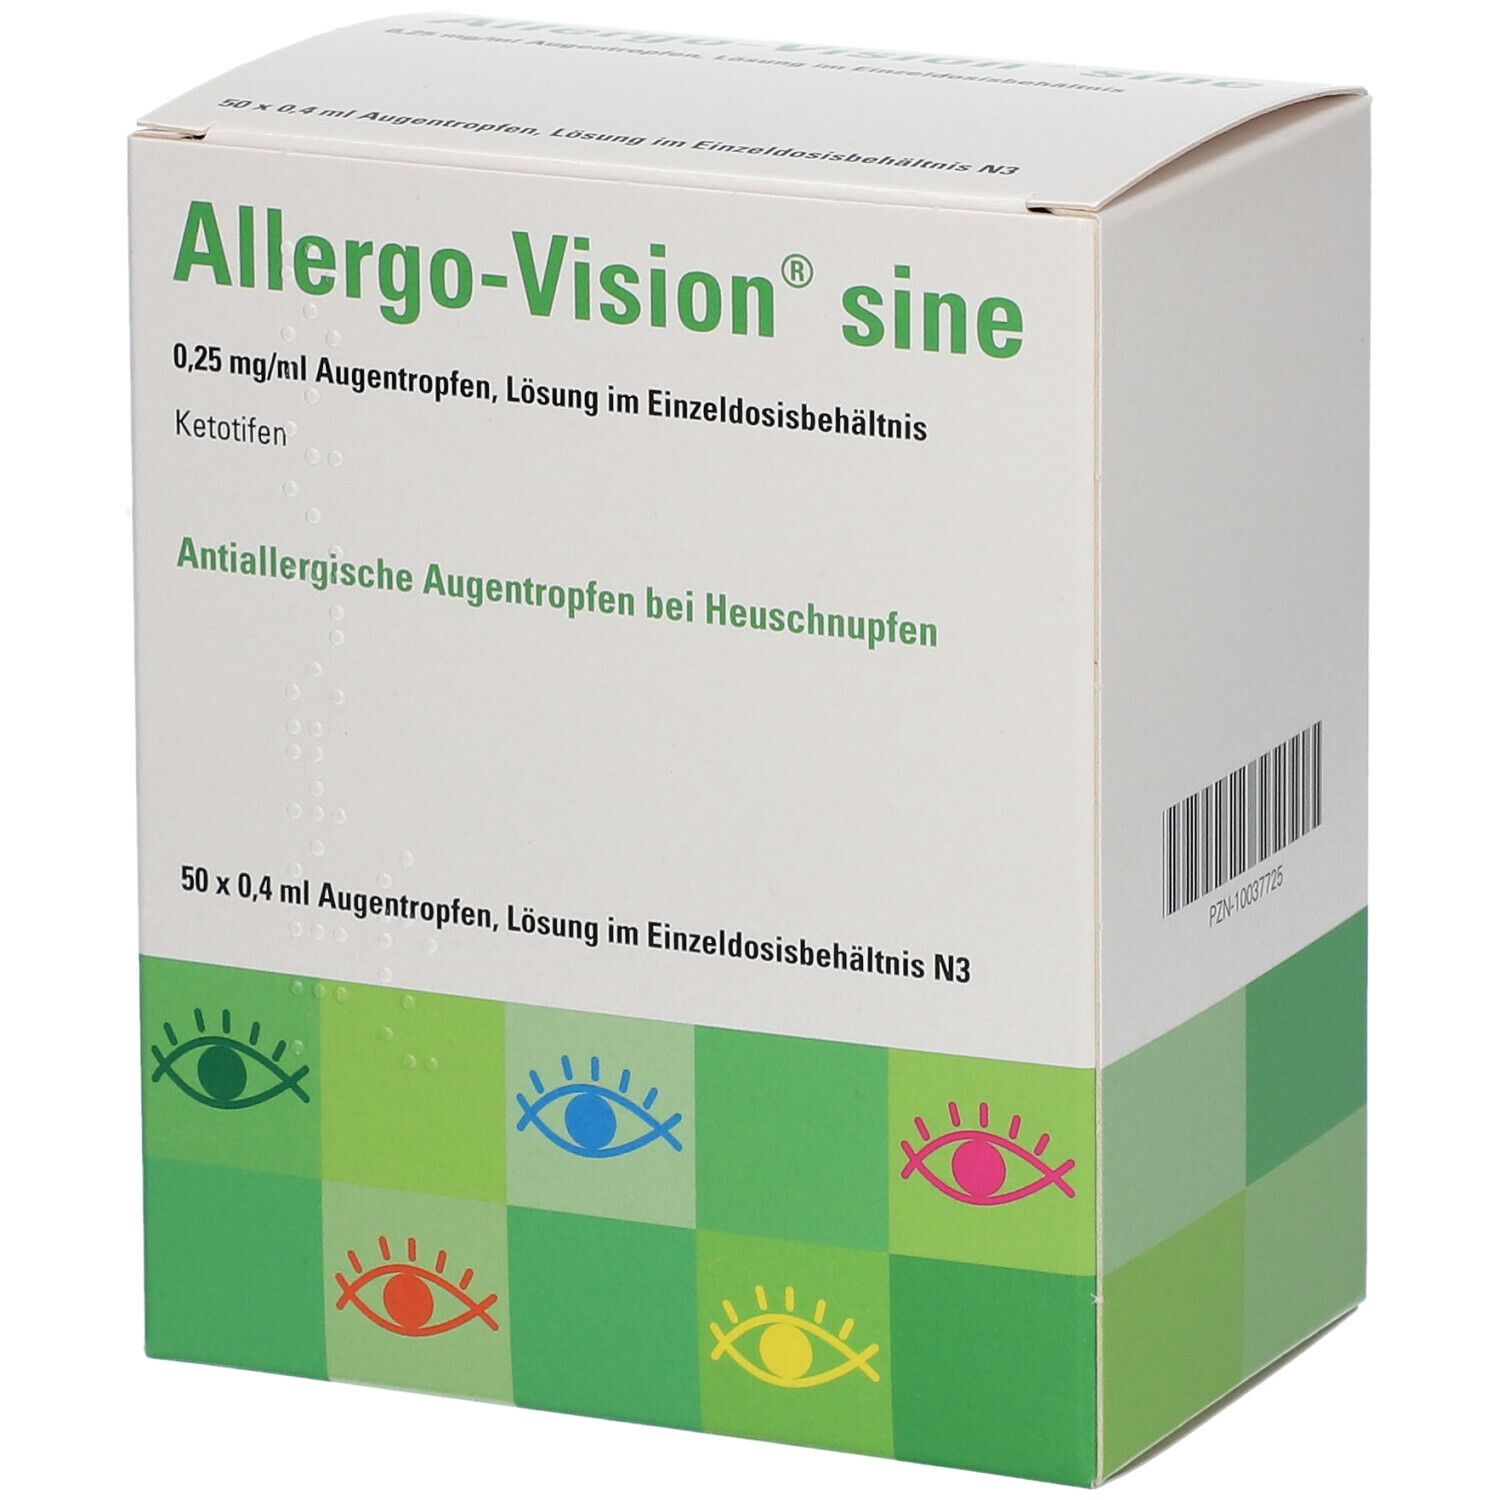 Allergo-Vision® sine 0,25mg/ml im Einzeldosisbehätnis